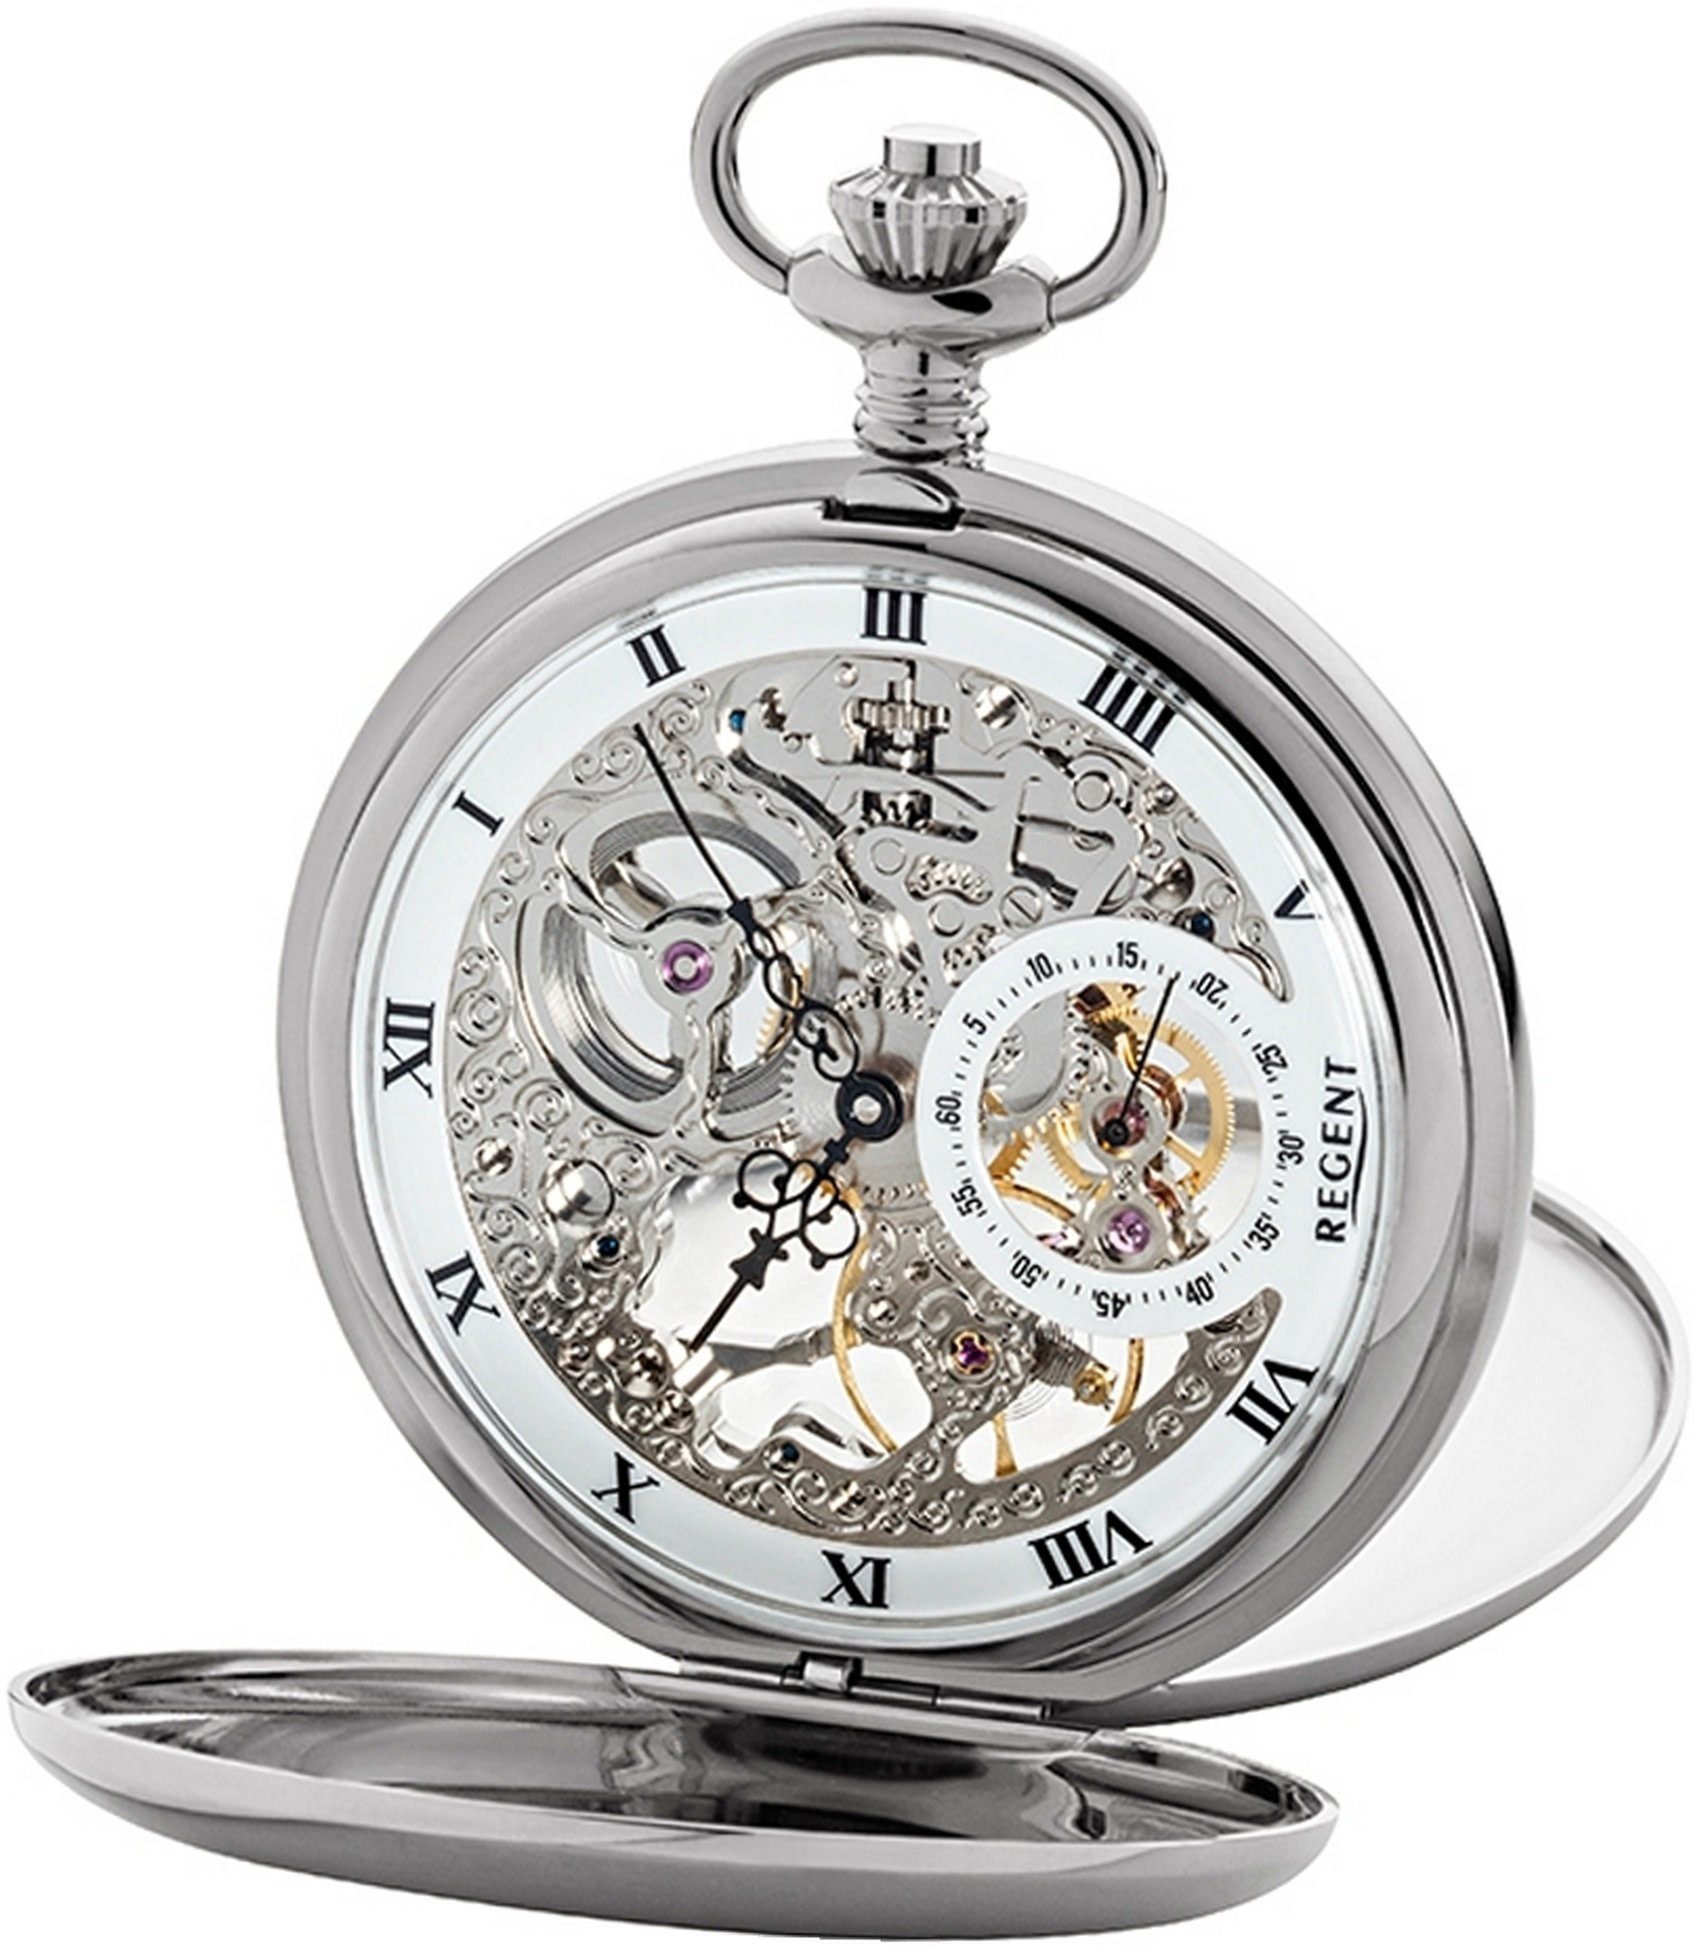 Regent Taschenuhr Regent Herren Uhr GM1611 Armbanduhr, (Analog, Analoguhr), Herrenuhr, rundes Gehäuse, groß (ca. 53mm), weiß